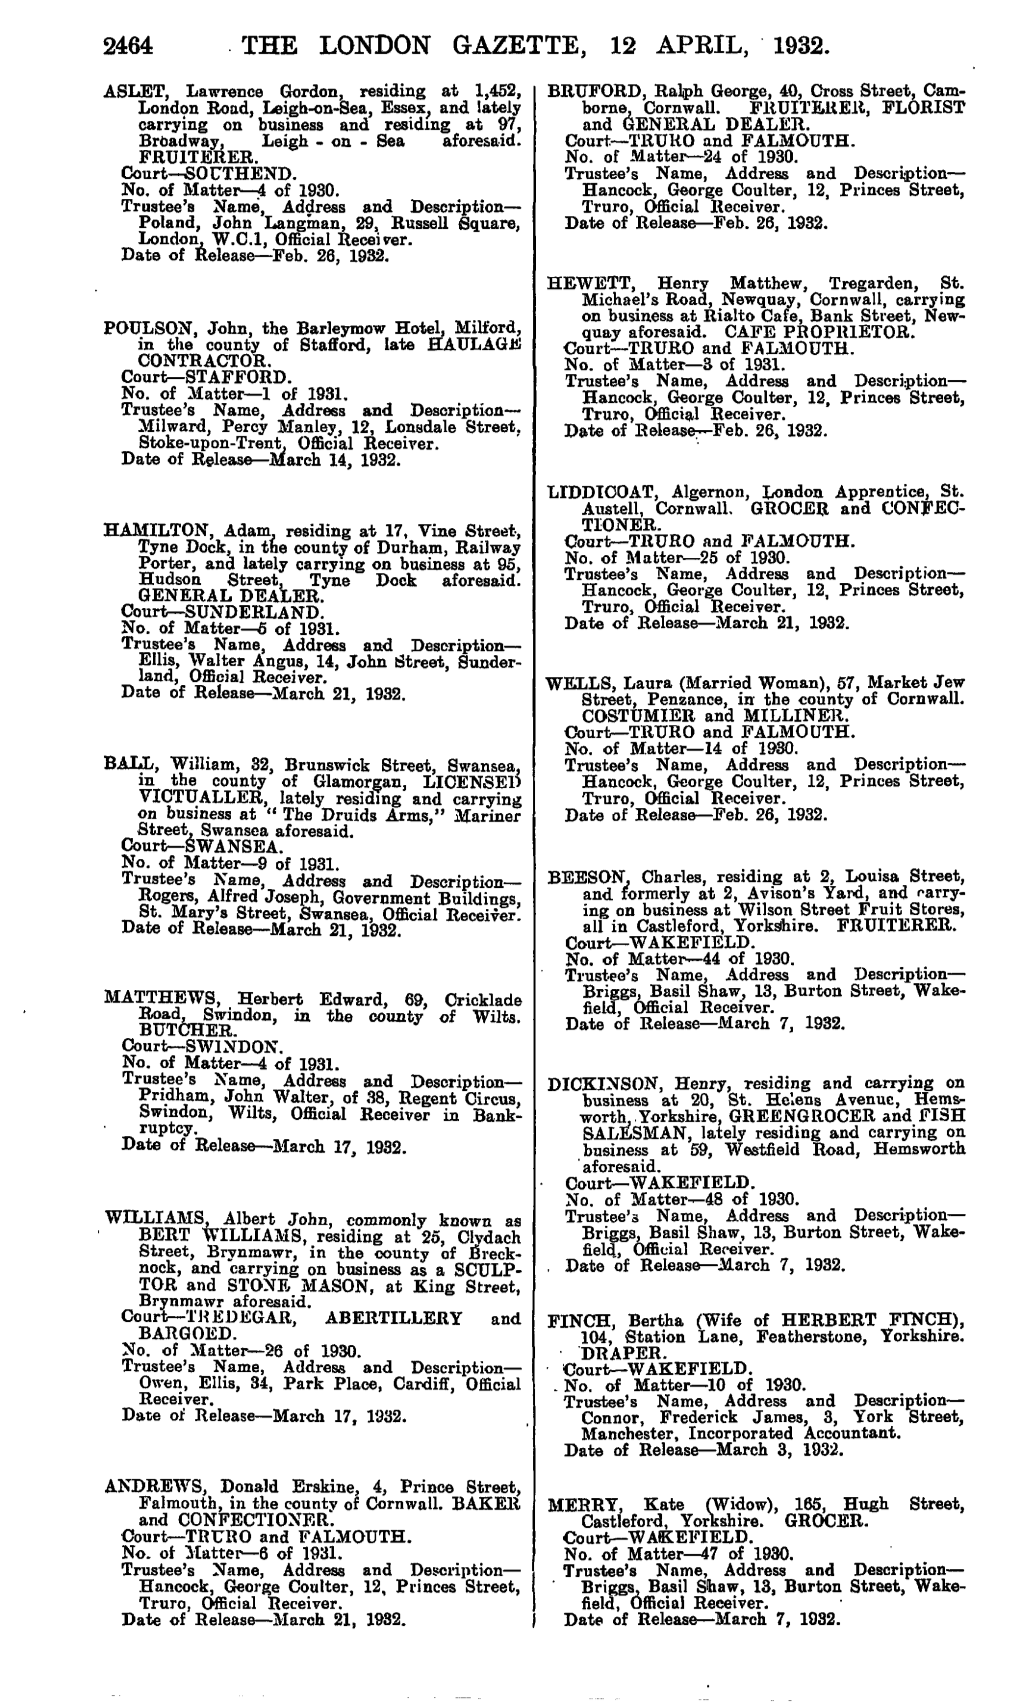 2464 the London Gazette, 12 April, 1932